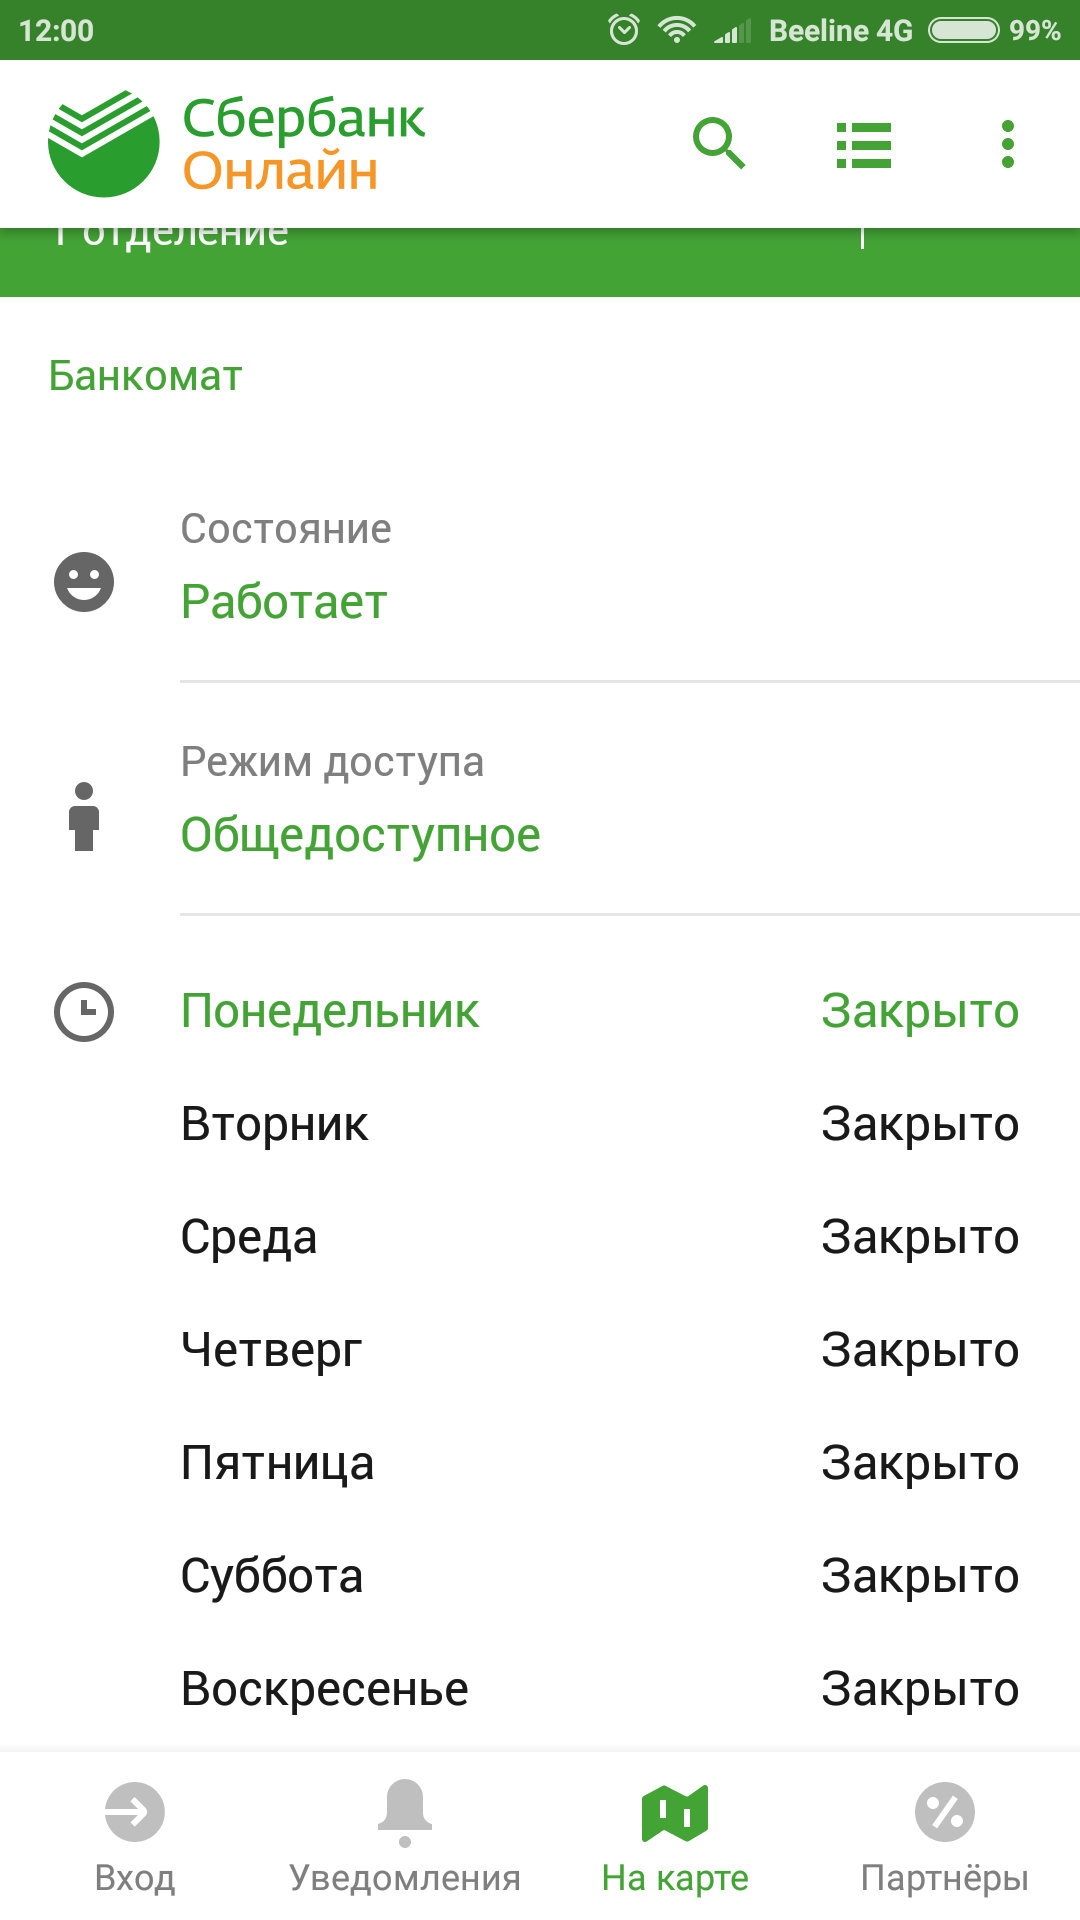 Sberbank available - My, Sberbank, Availability, My